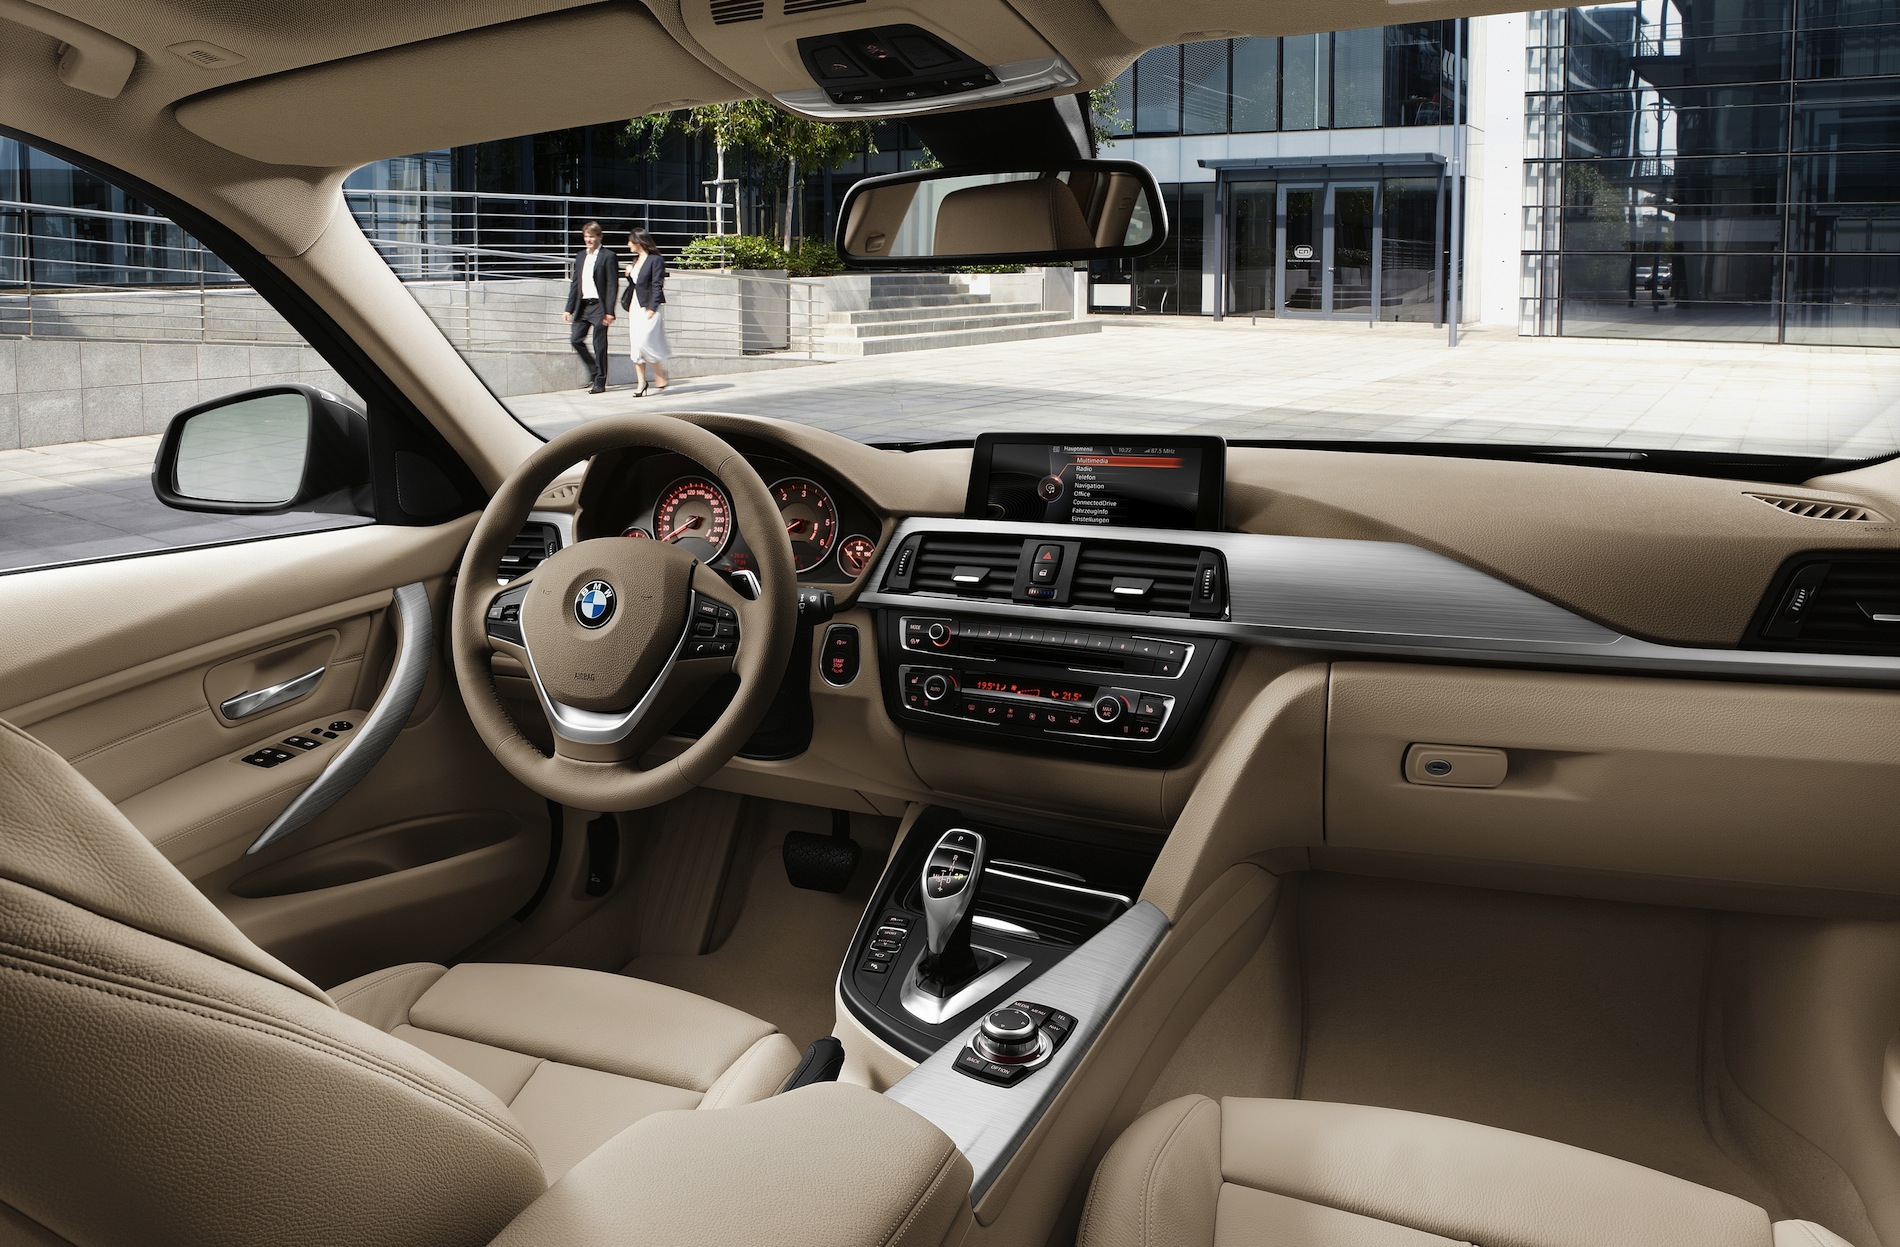 2013 BMW 320d Touring Review photos CarAdvice